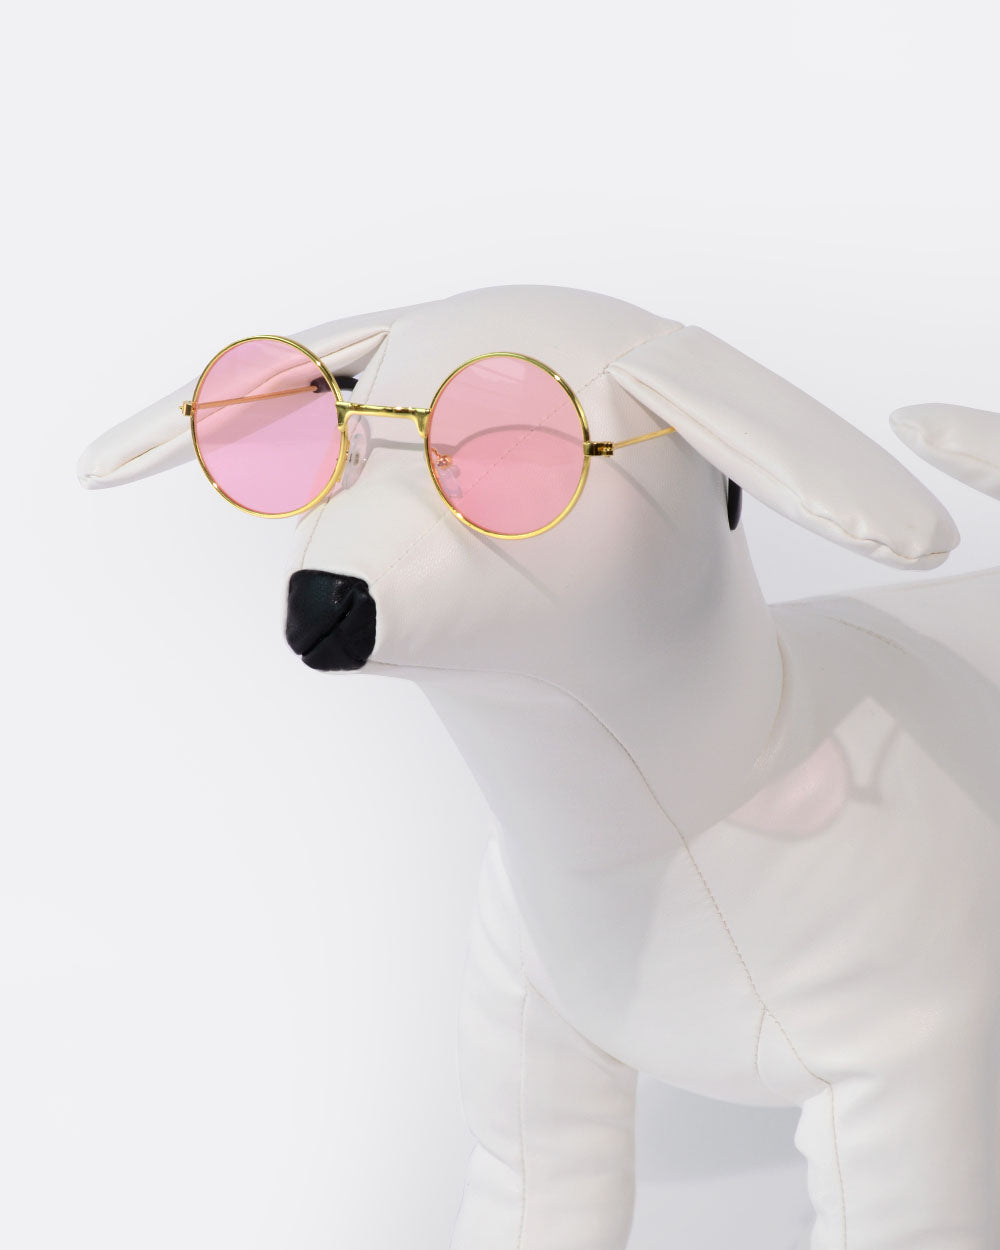 丸レンズ 犬用メガネ - ピンク